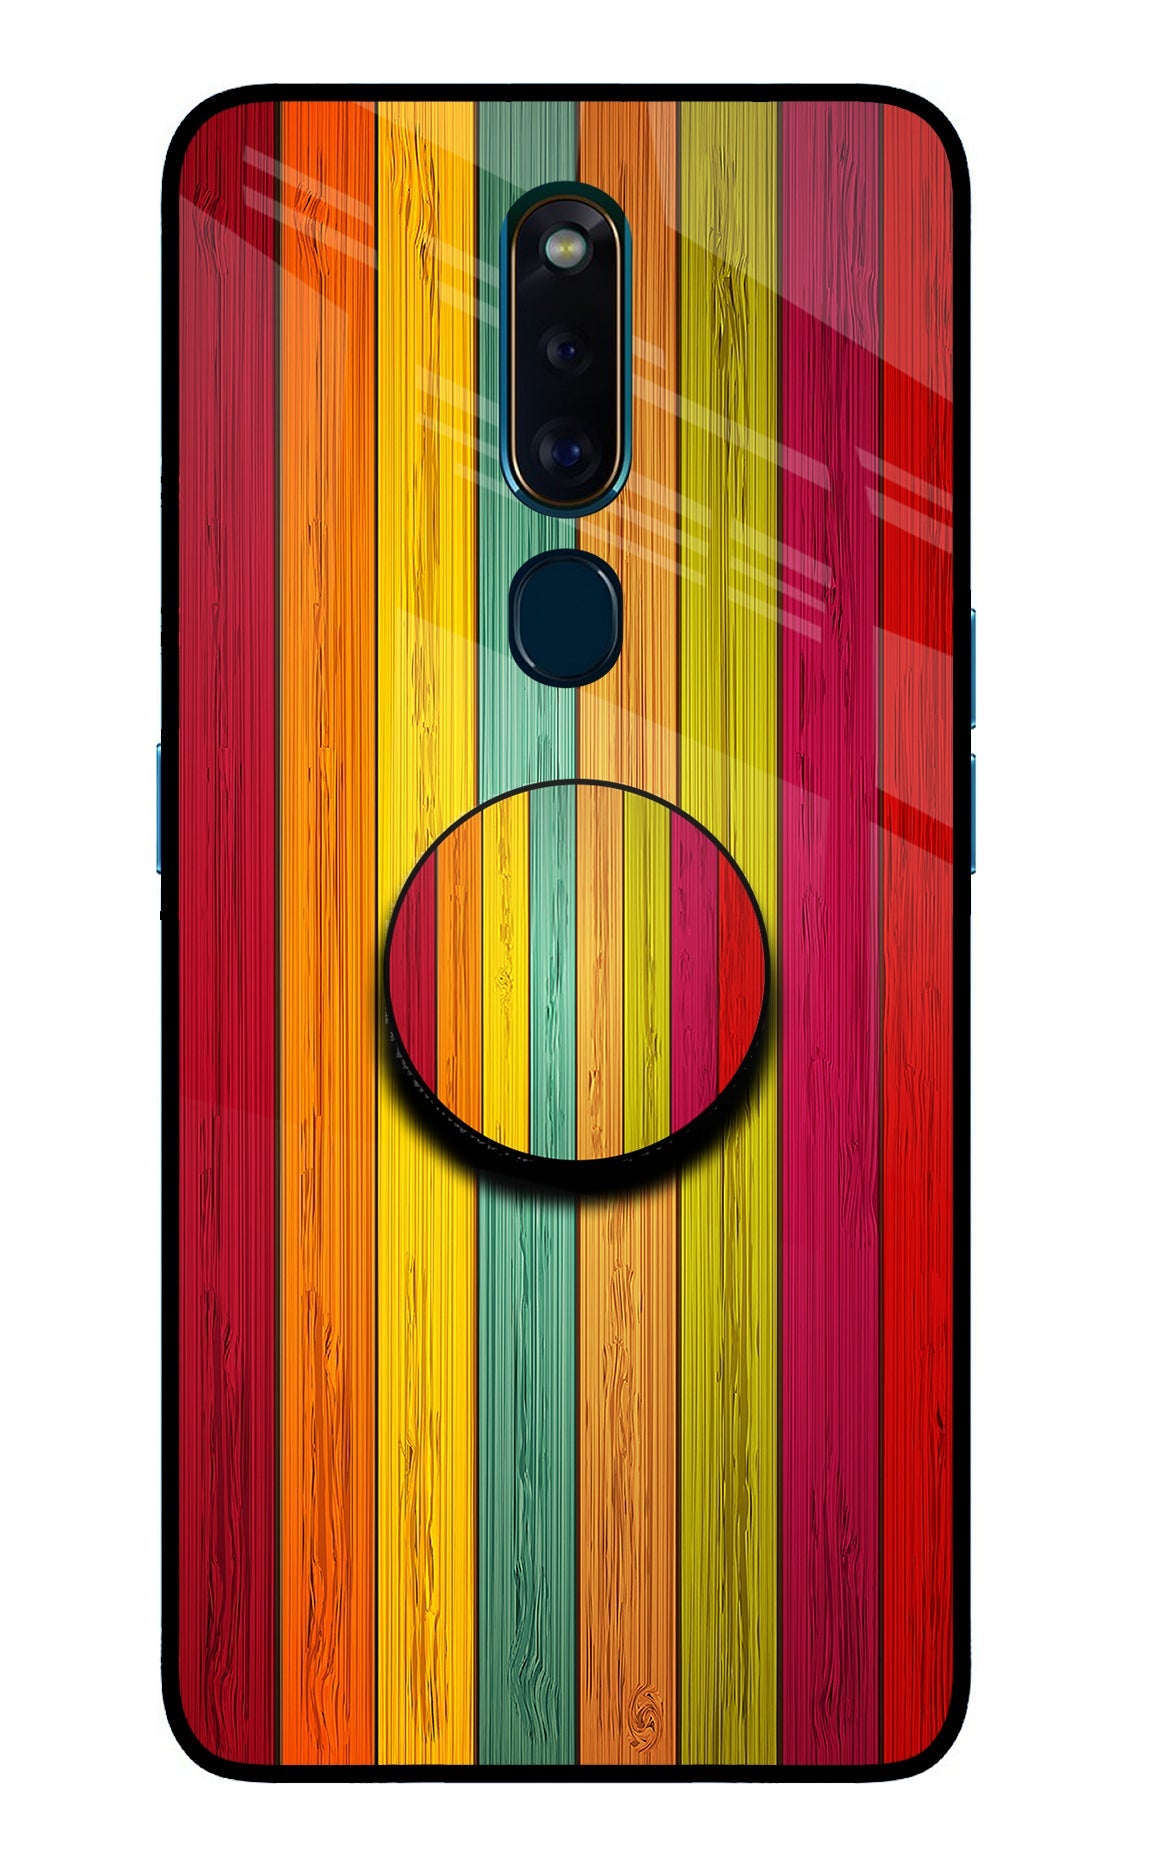 Multicolor Wooden Oppo F11 Pro Glass Case